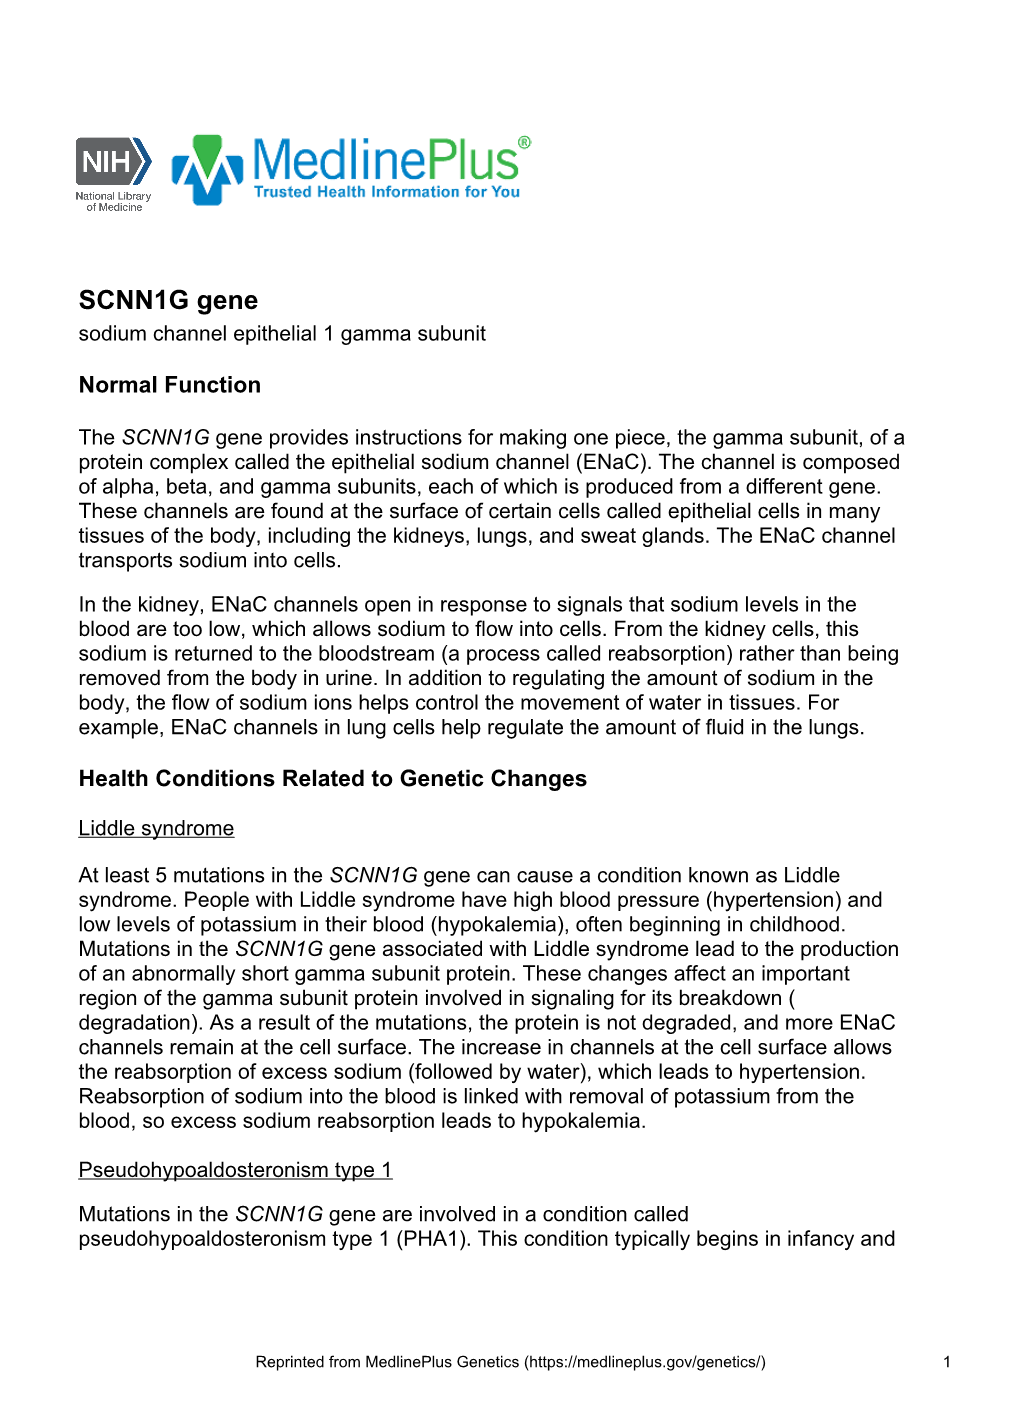 SCNN1G Gene Sodium Channel Epithelial 1 Gamma Subunit